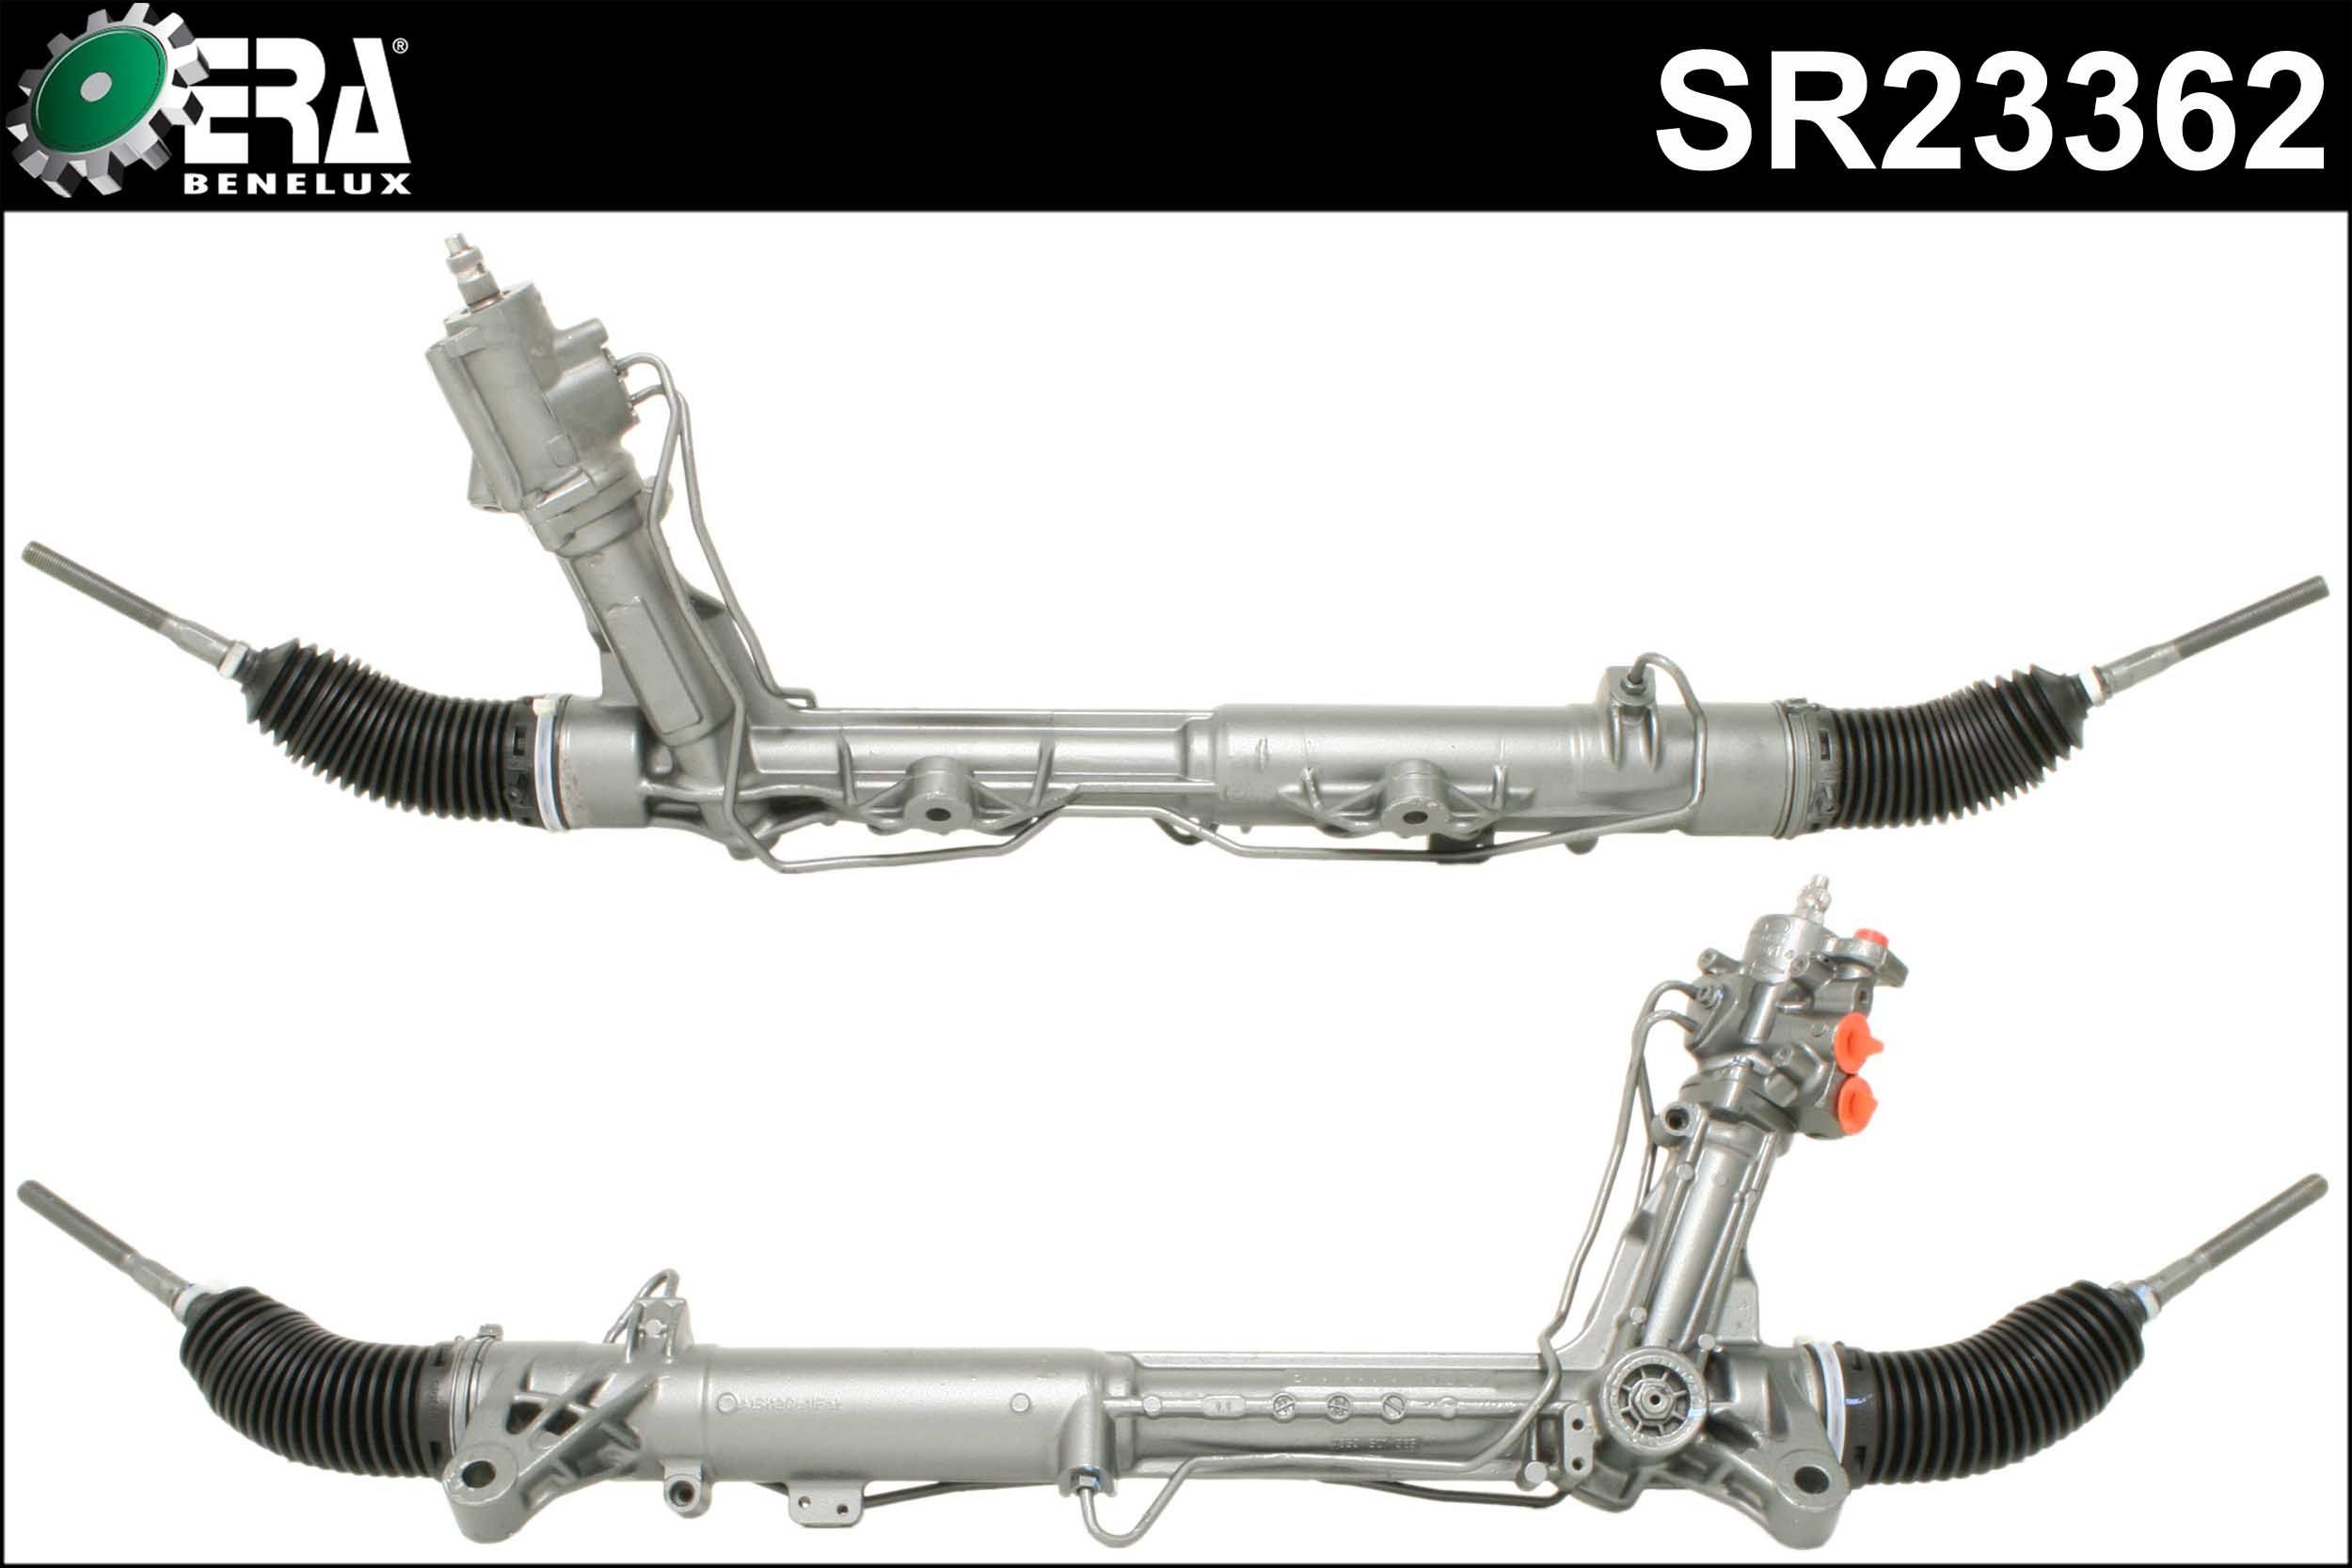 ERA Benelux SR23362 Steering rack BMW F07 530d 3.0 245 hp Diesel 2011 price